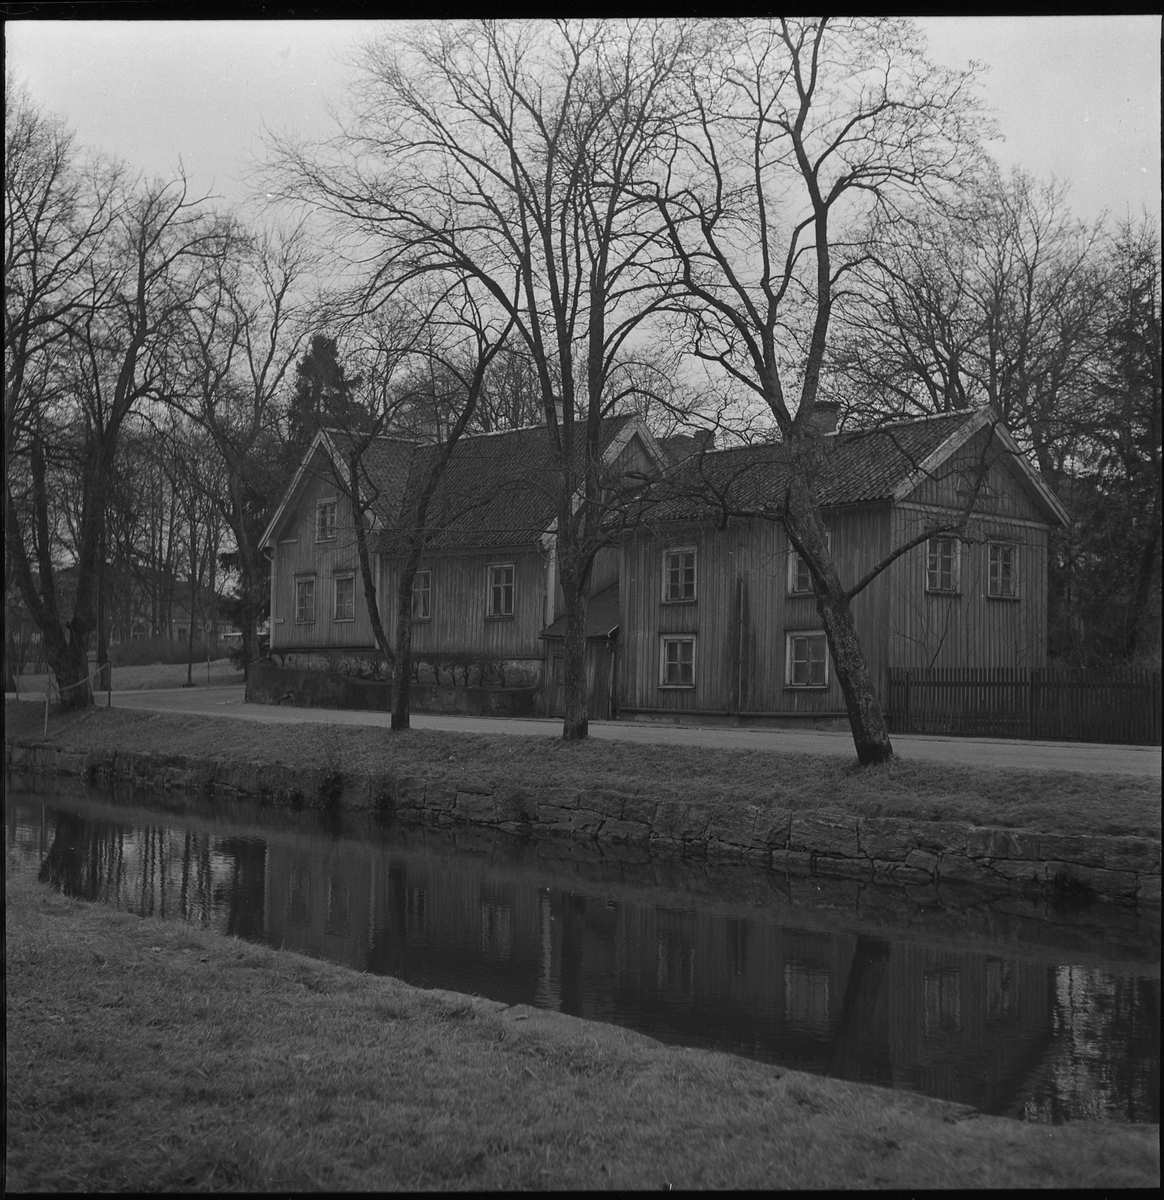 Åmanska fastigheten sedd från Bryggaregatan ner mot Stationshuset. Dec 1950.